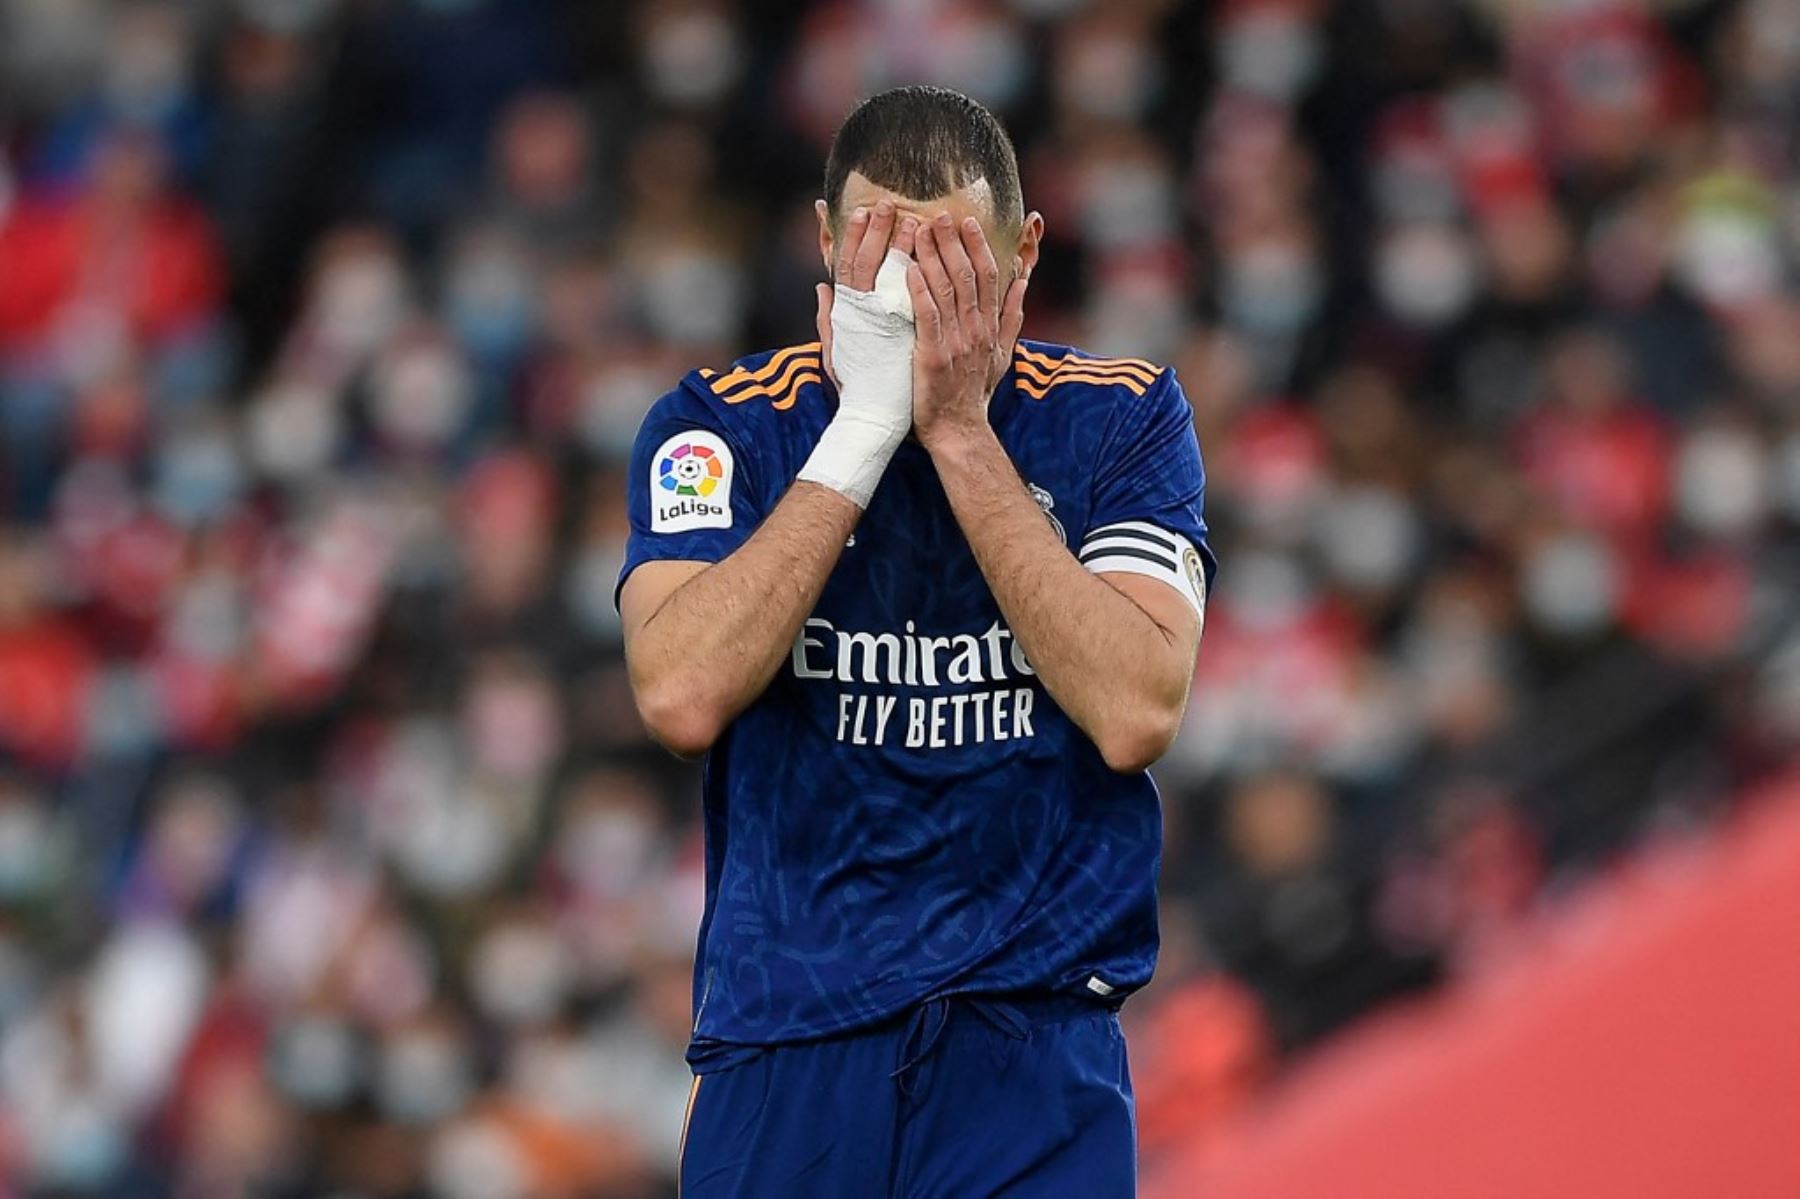 La estrella del Real Madrid, Karim Benzema un año de prisión, con suspensión de pena, como cómplice del intento de chantaje a su excompañero de selección Mathieu Valbuena